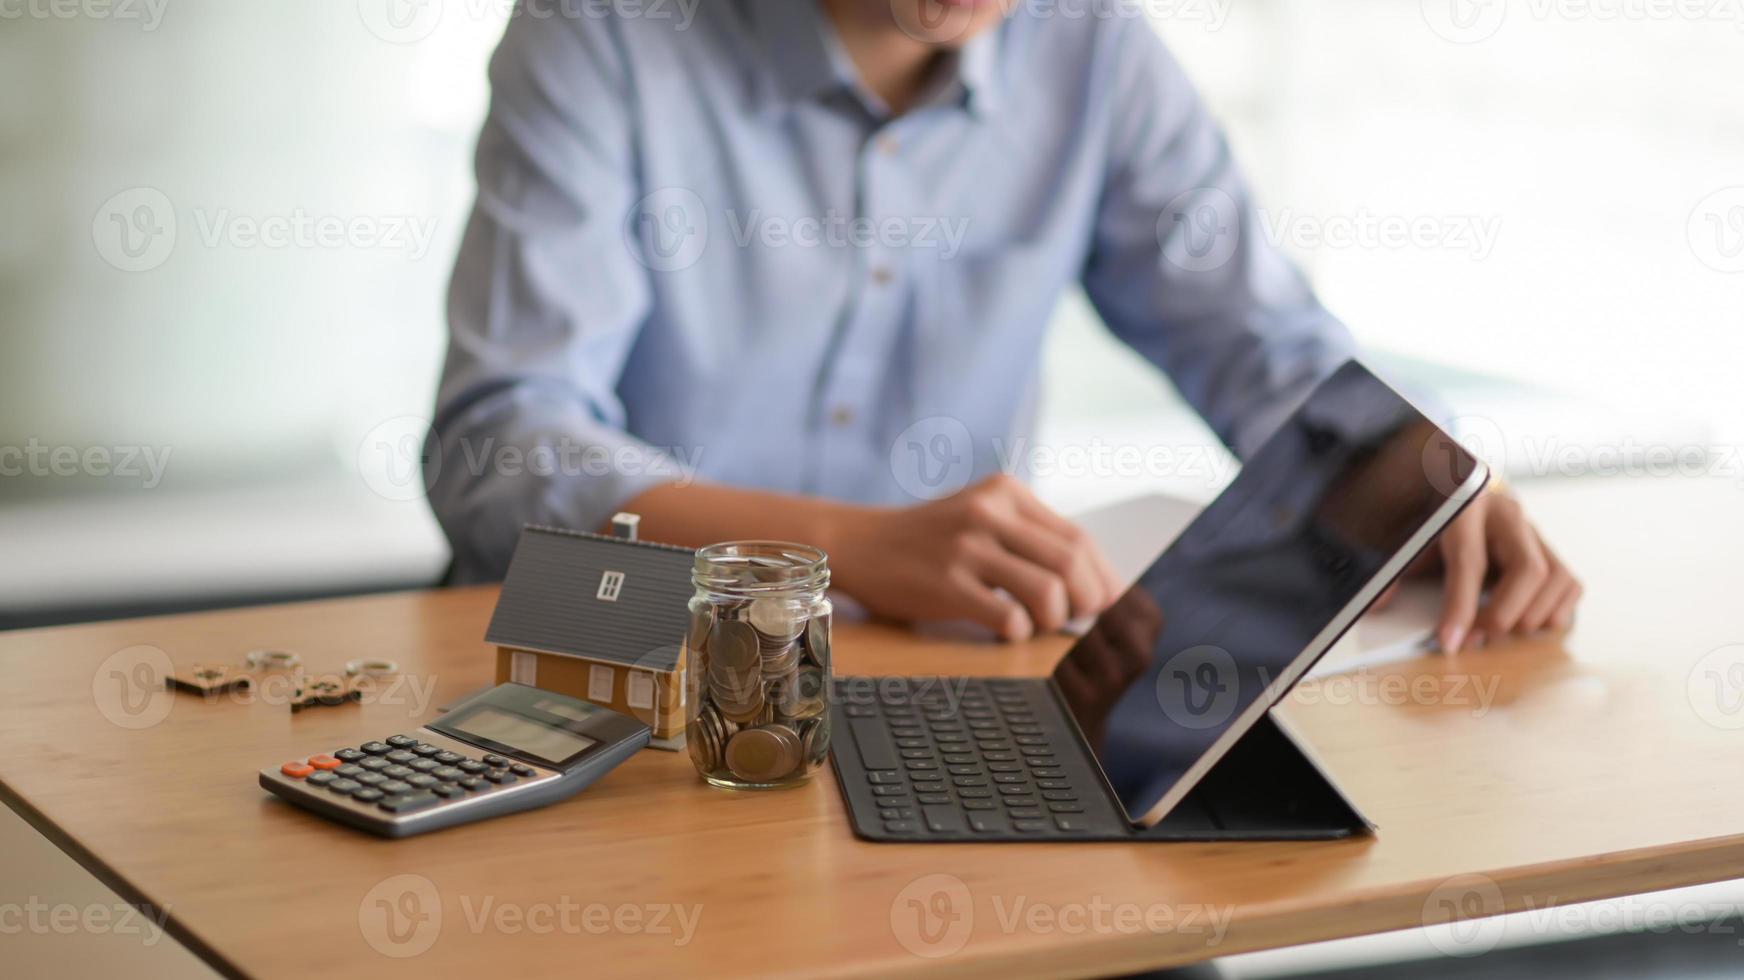 laptop, moneta in una bottiglia di vetro, calcolatrice con una casa modello sul tavolo e uno sfondo sfocato di persone sedute a guardare documenti. foto